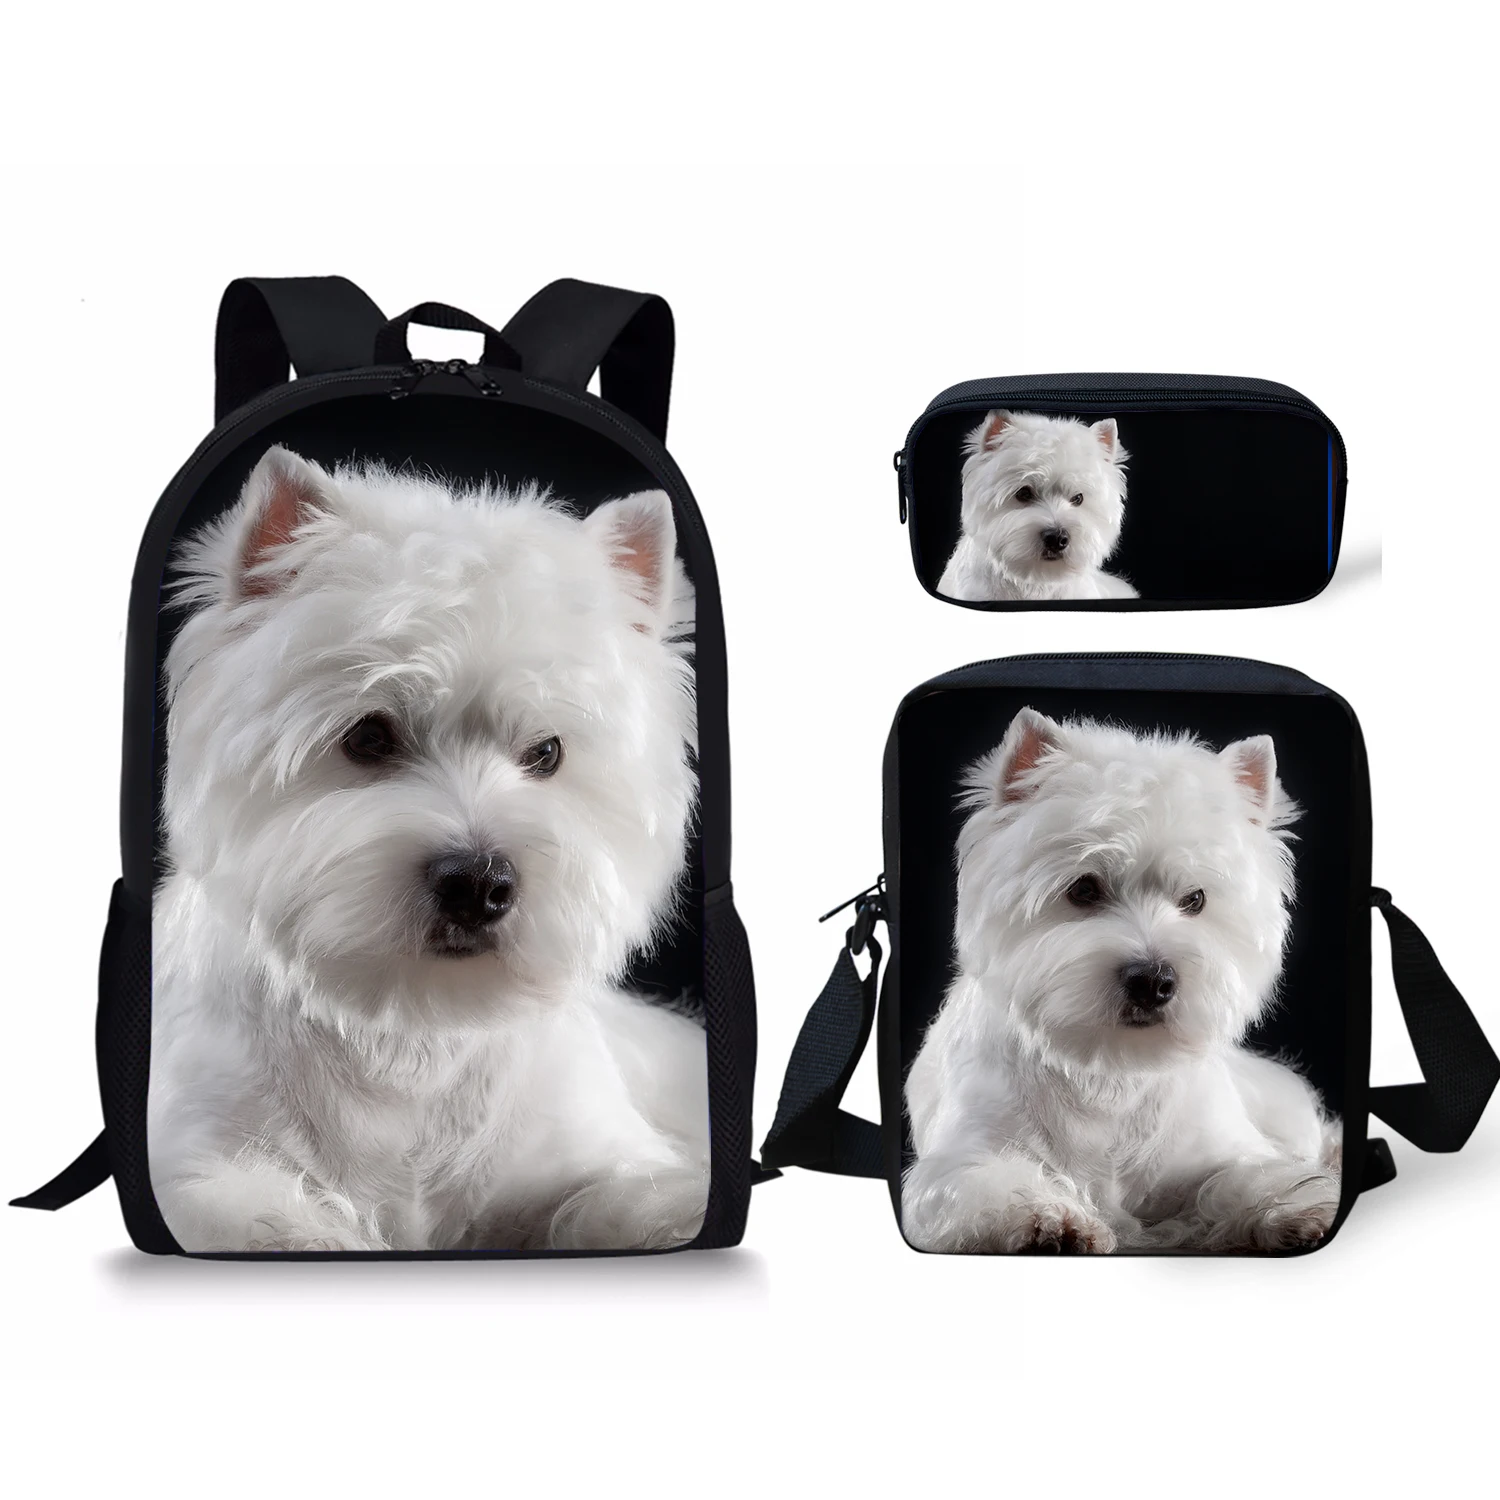 "Школьная сумка West Highland Terrier 3 шт./компл., школьная сумка, ежедневный рюкзак, новинка 2022, подарок для девочек, школьные сумки, бесплатная достав..."